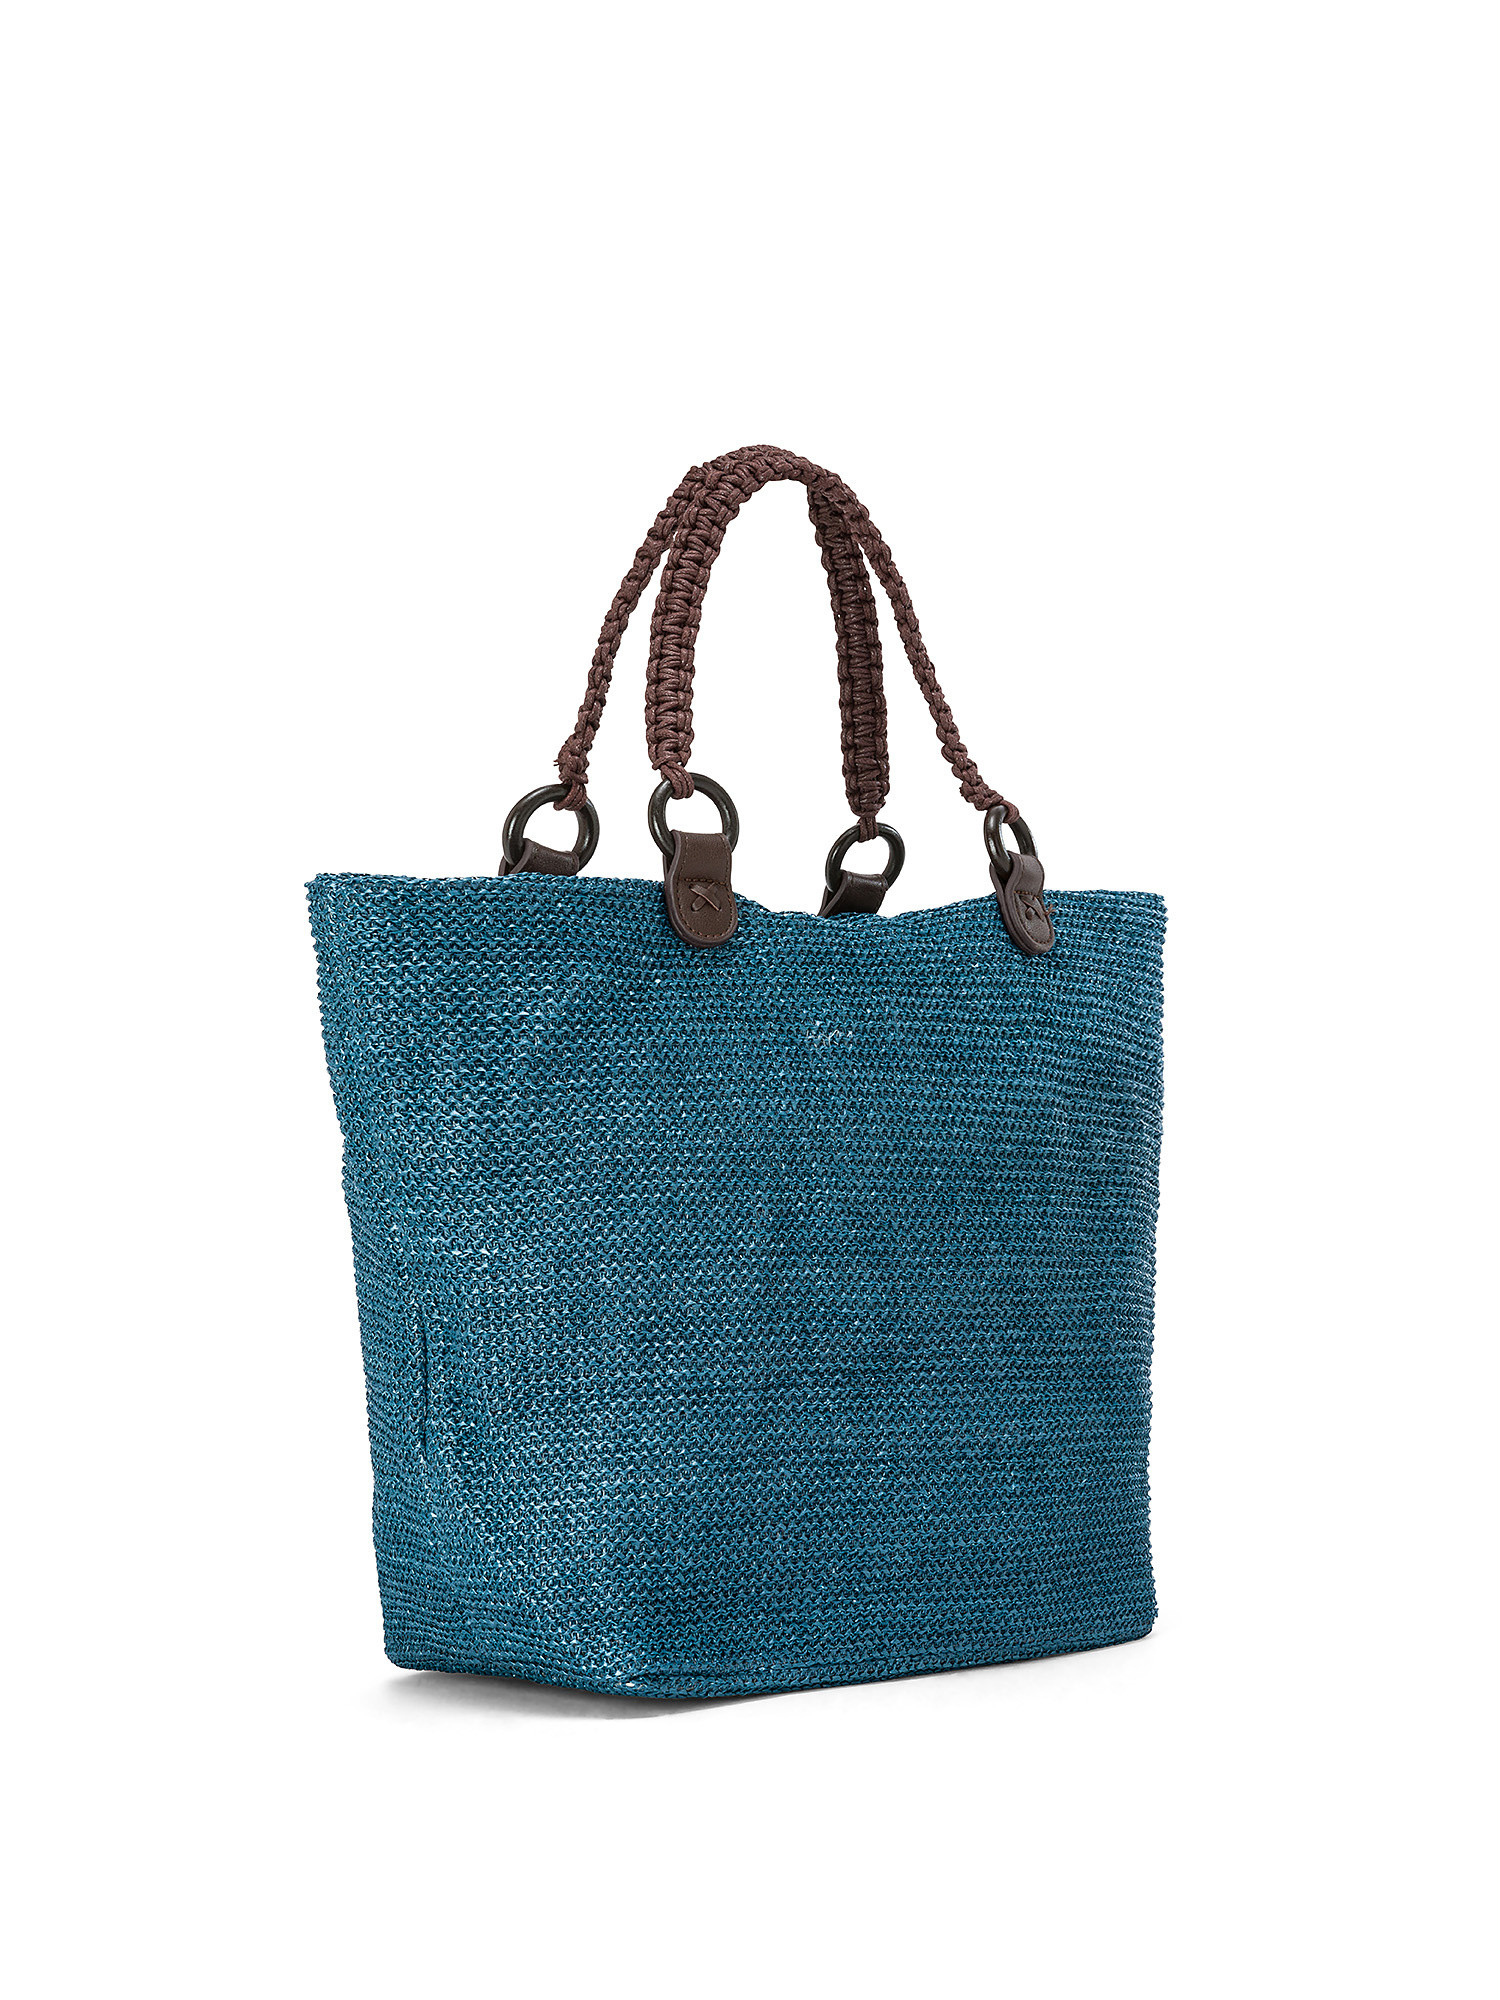 Koan - Shopping bag, Blu, large image number 1